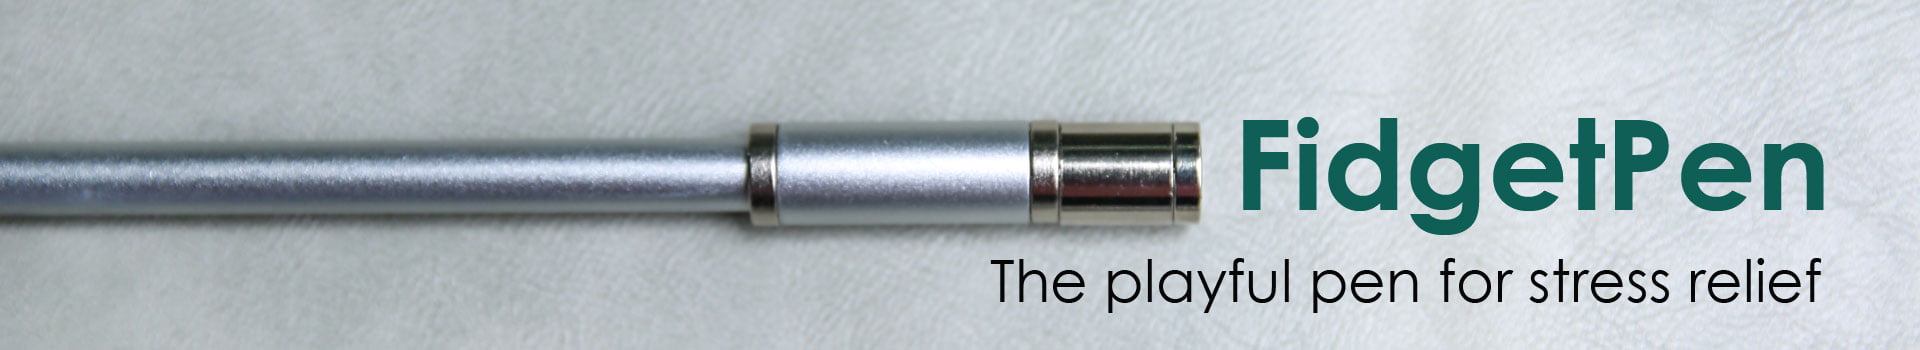 Αντιστρές στυλό FidgetPen της Allocacoc - μπρονζέ - με μελάνι που διαγράφεται. geekers.gr